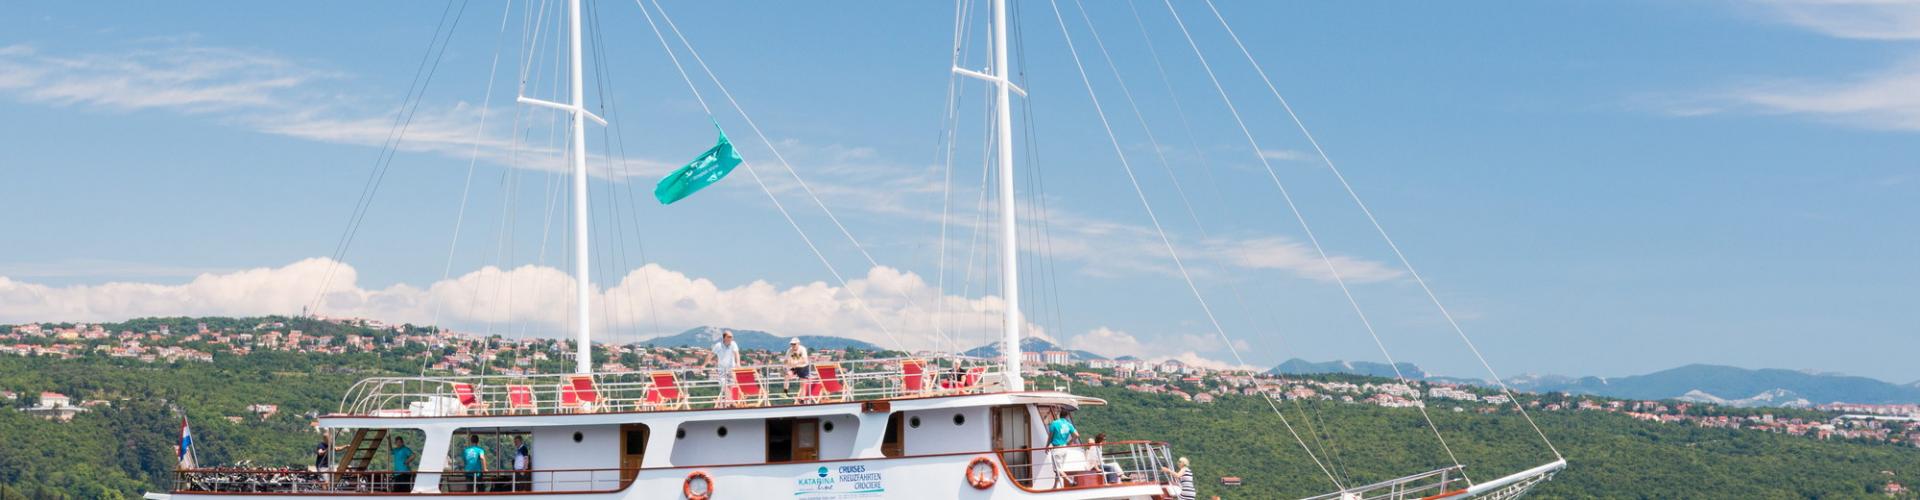 Premium navire de croisière MV Morena- voilier à moteur